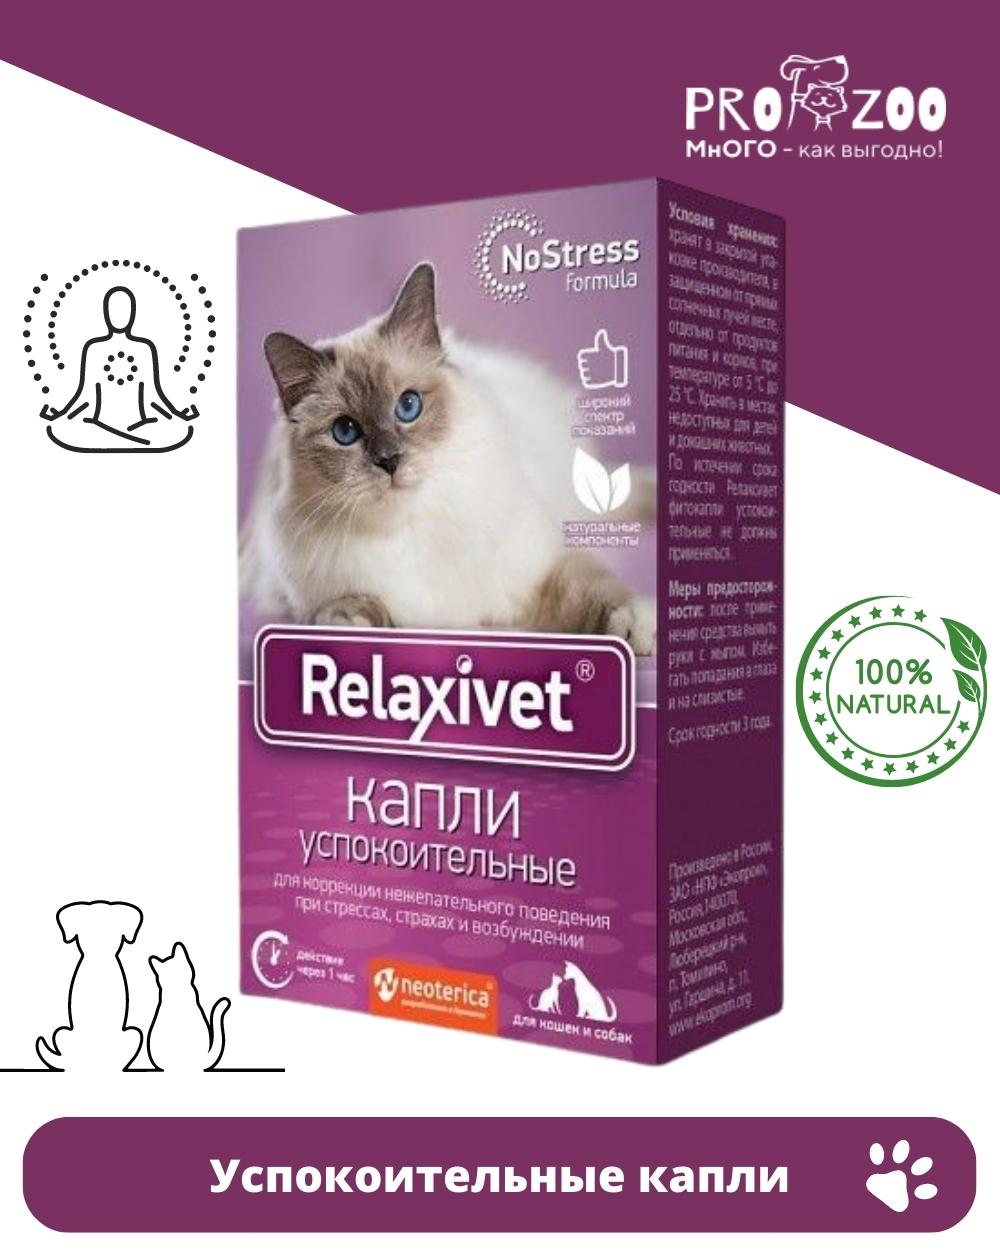 Релаксивет фитокапли успокоительные x103. Таблетки успокоительные Relaxivet x108 для кошек и собак, 10шт. Релаксивет для кошек цена. Успокоительные релаксивет